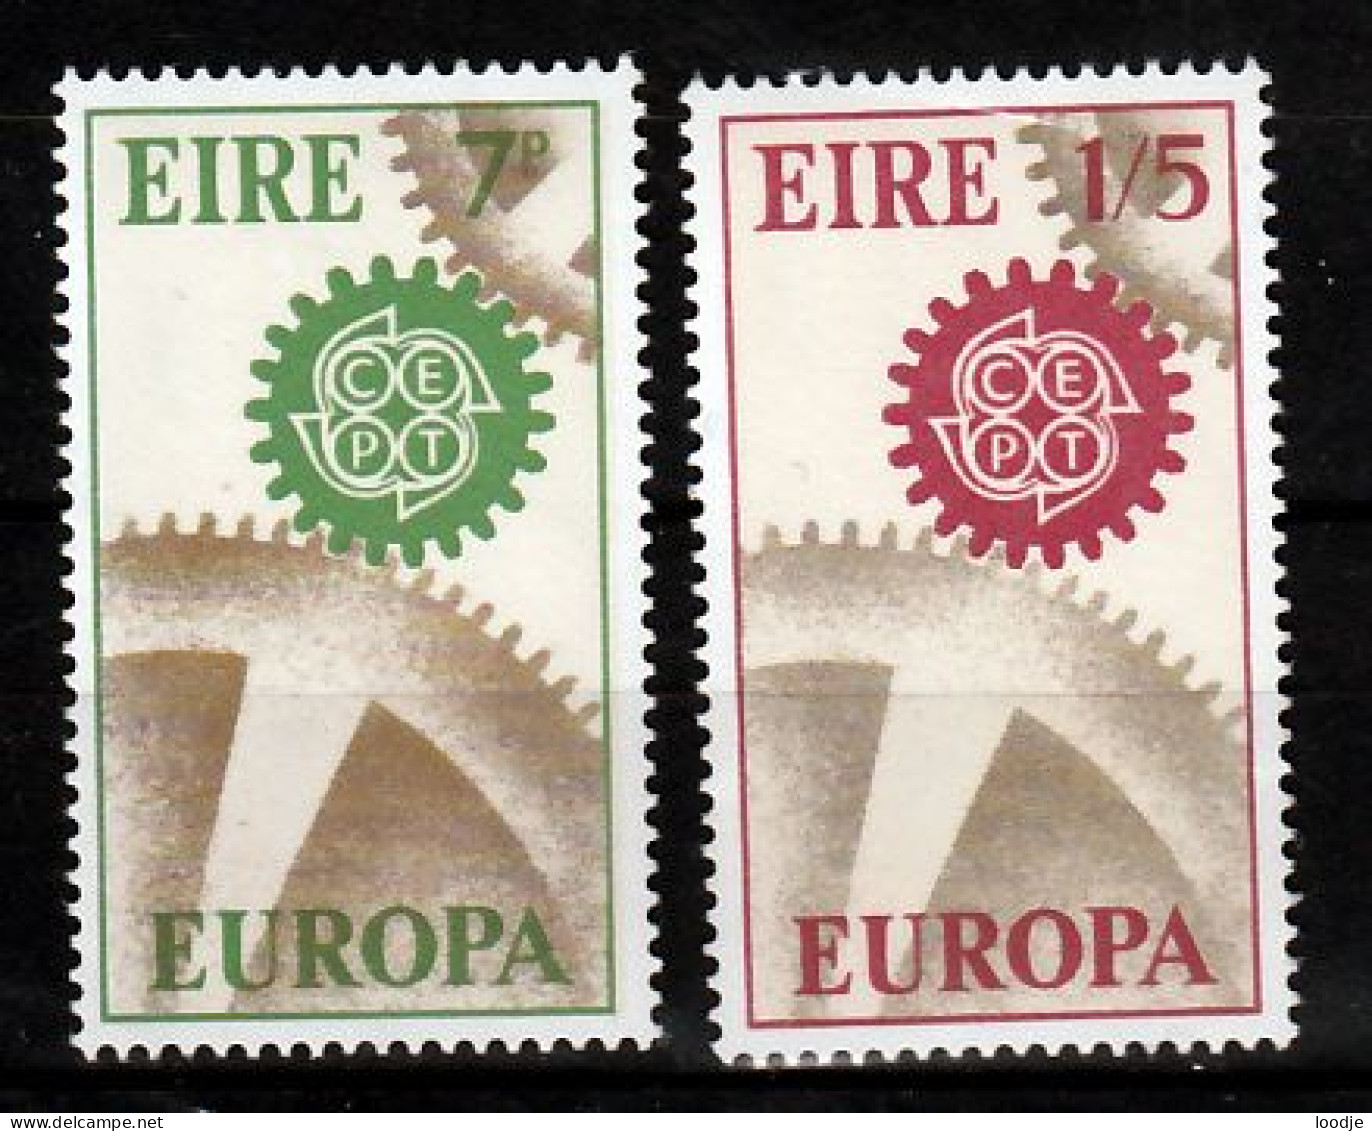 Ierland Europa Cept 1967  Postfris - 1967